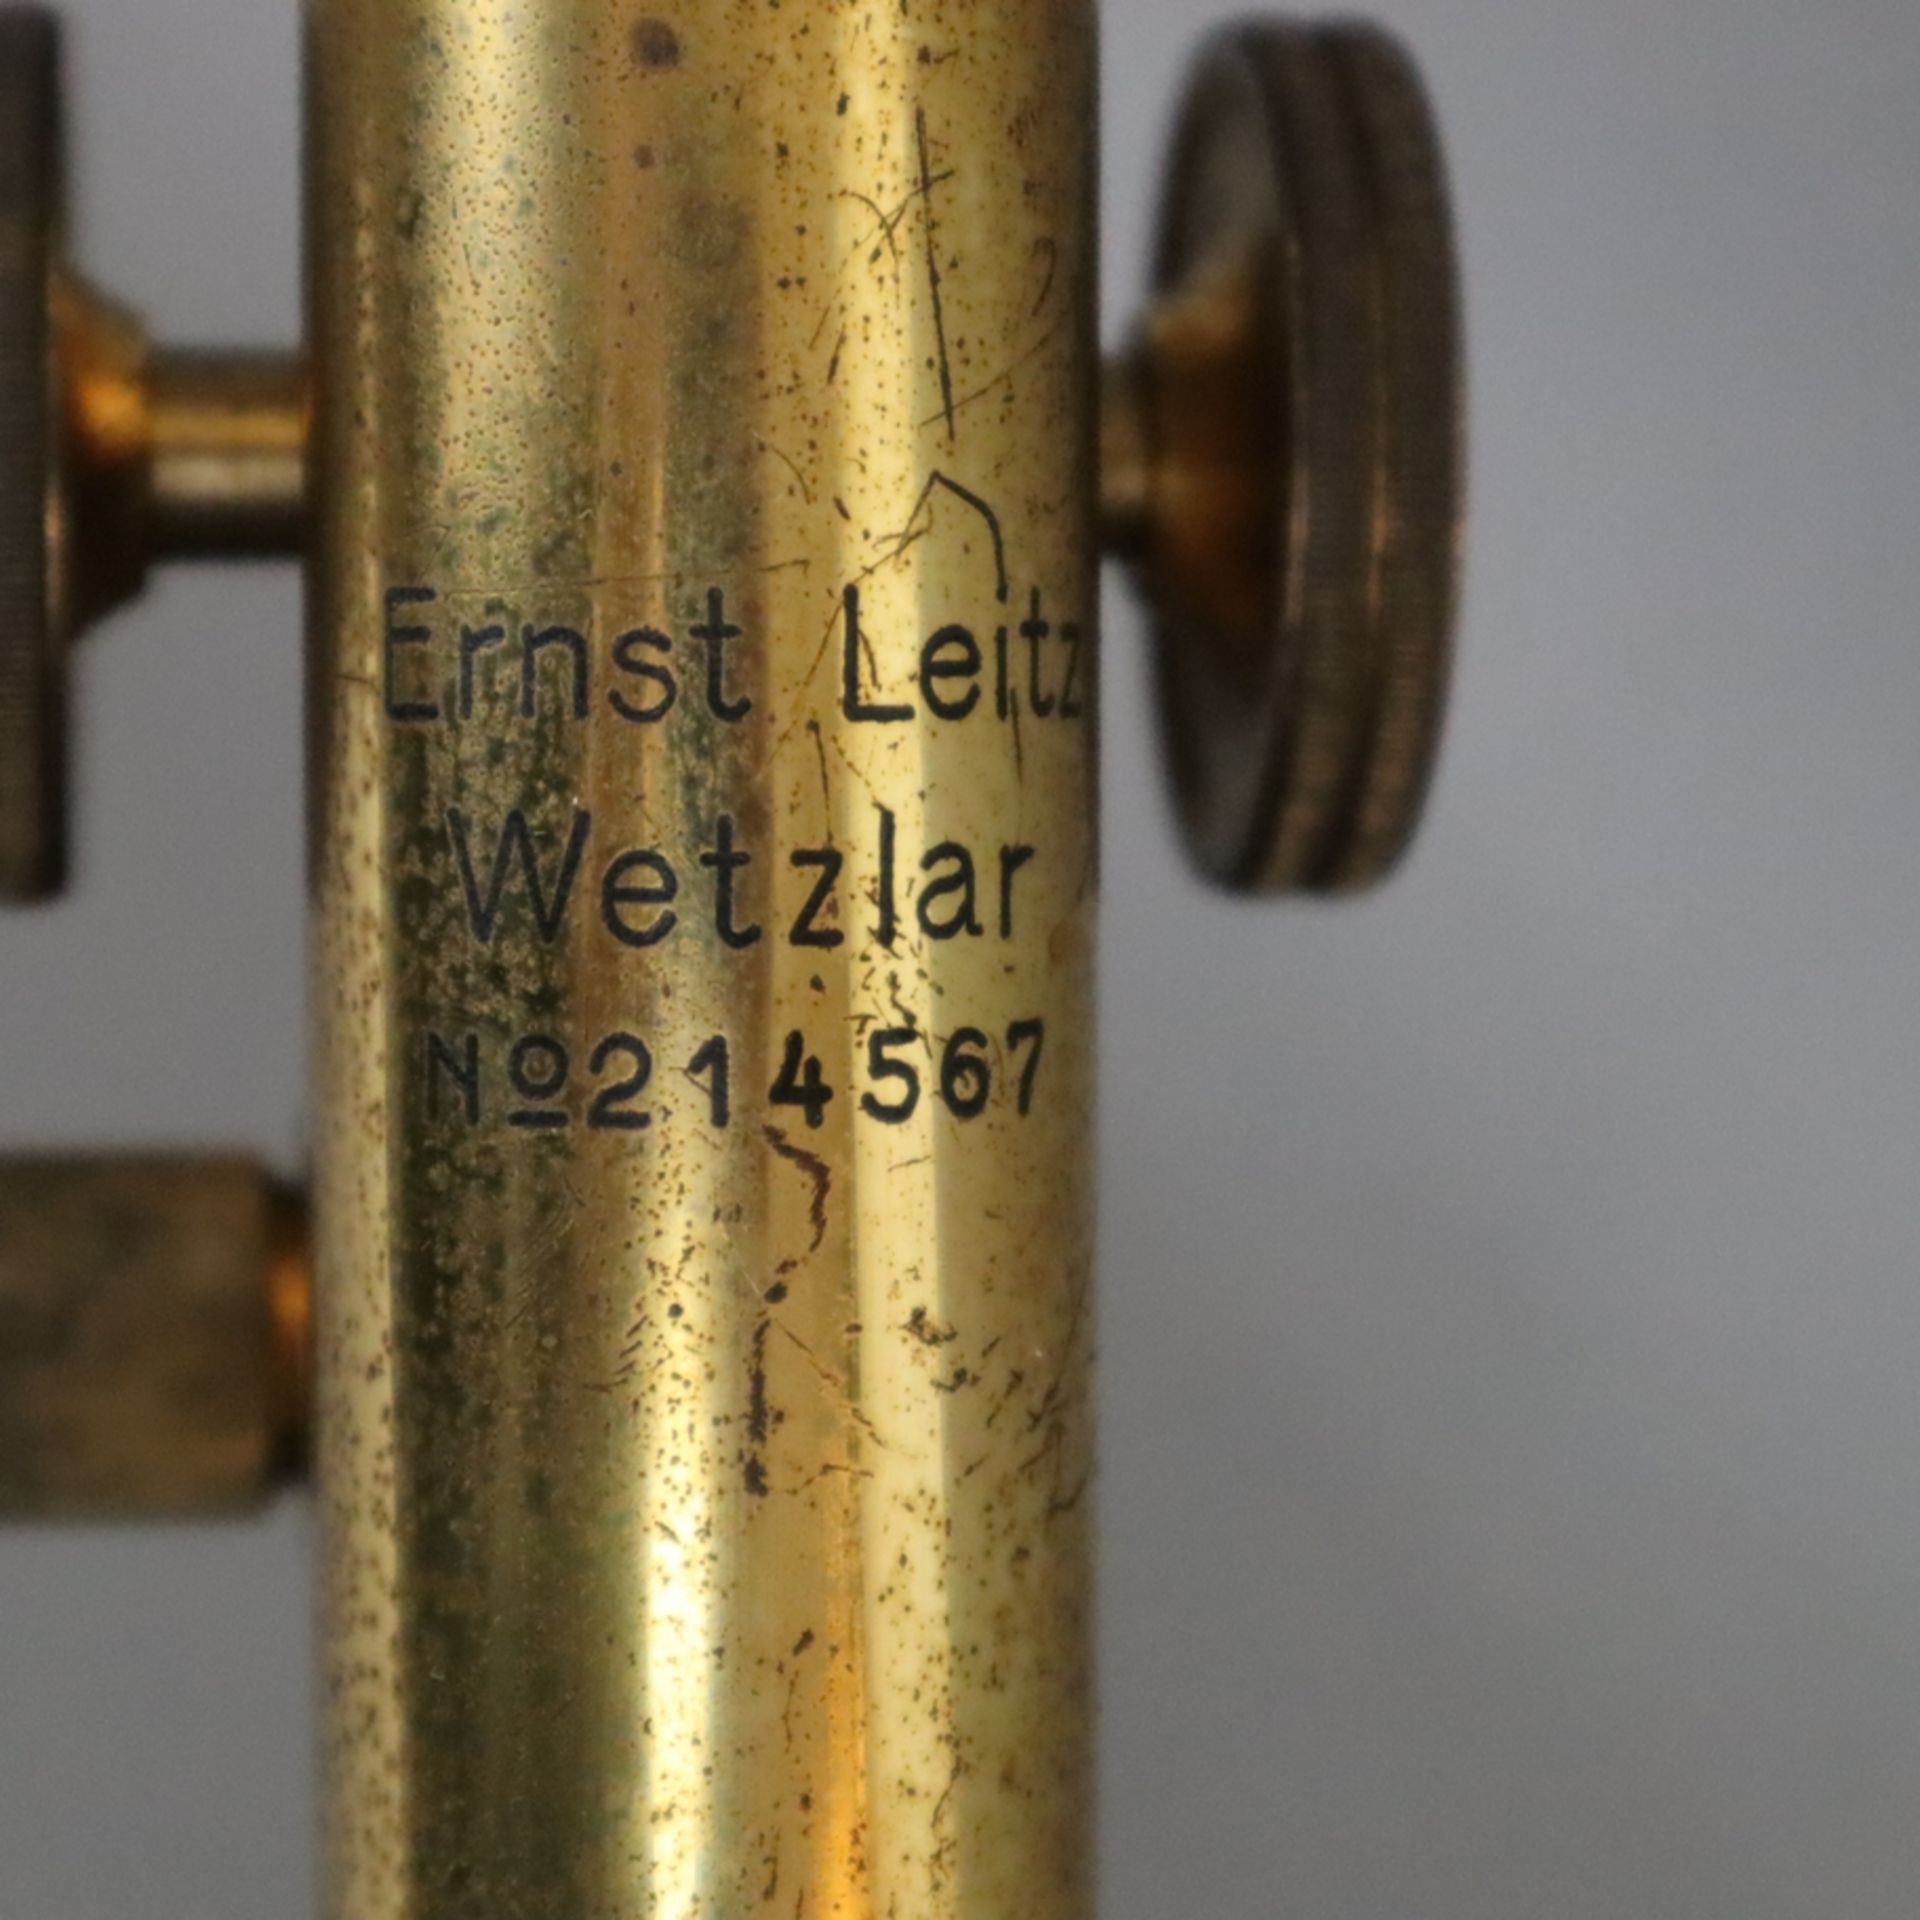 Zwei Mikroskope mit Zubehör - Ernst Leitz Wetzlar, am Tubus signiert mit Seriennummer "214567", Spi - Bild 6 aus 9